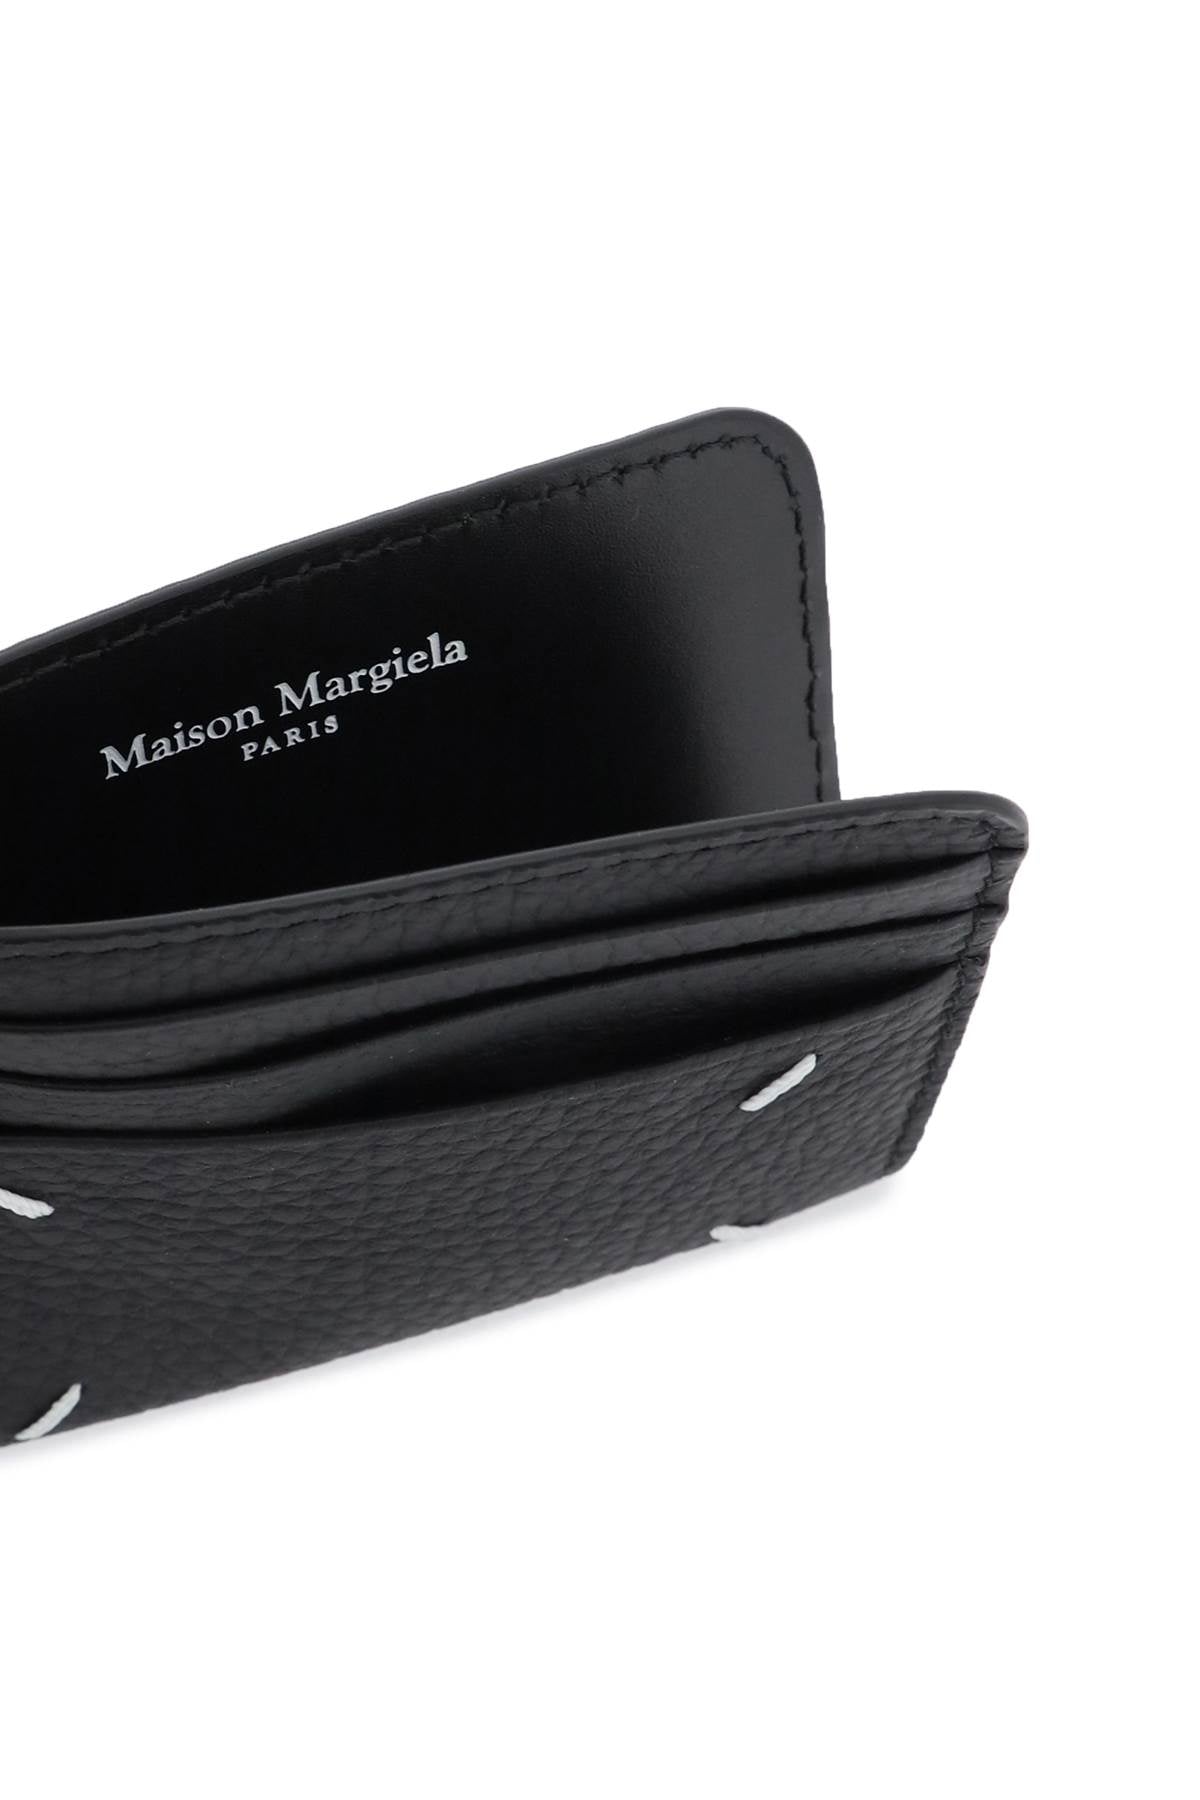 Maison margiela leather cardholder-1